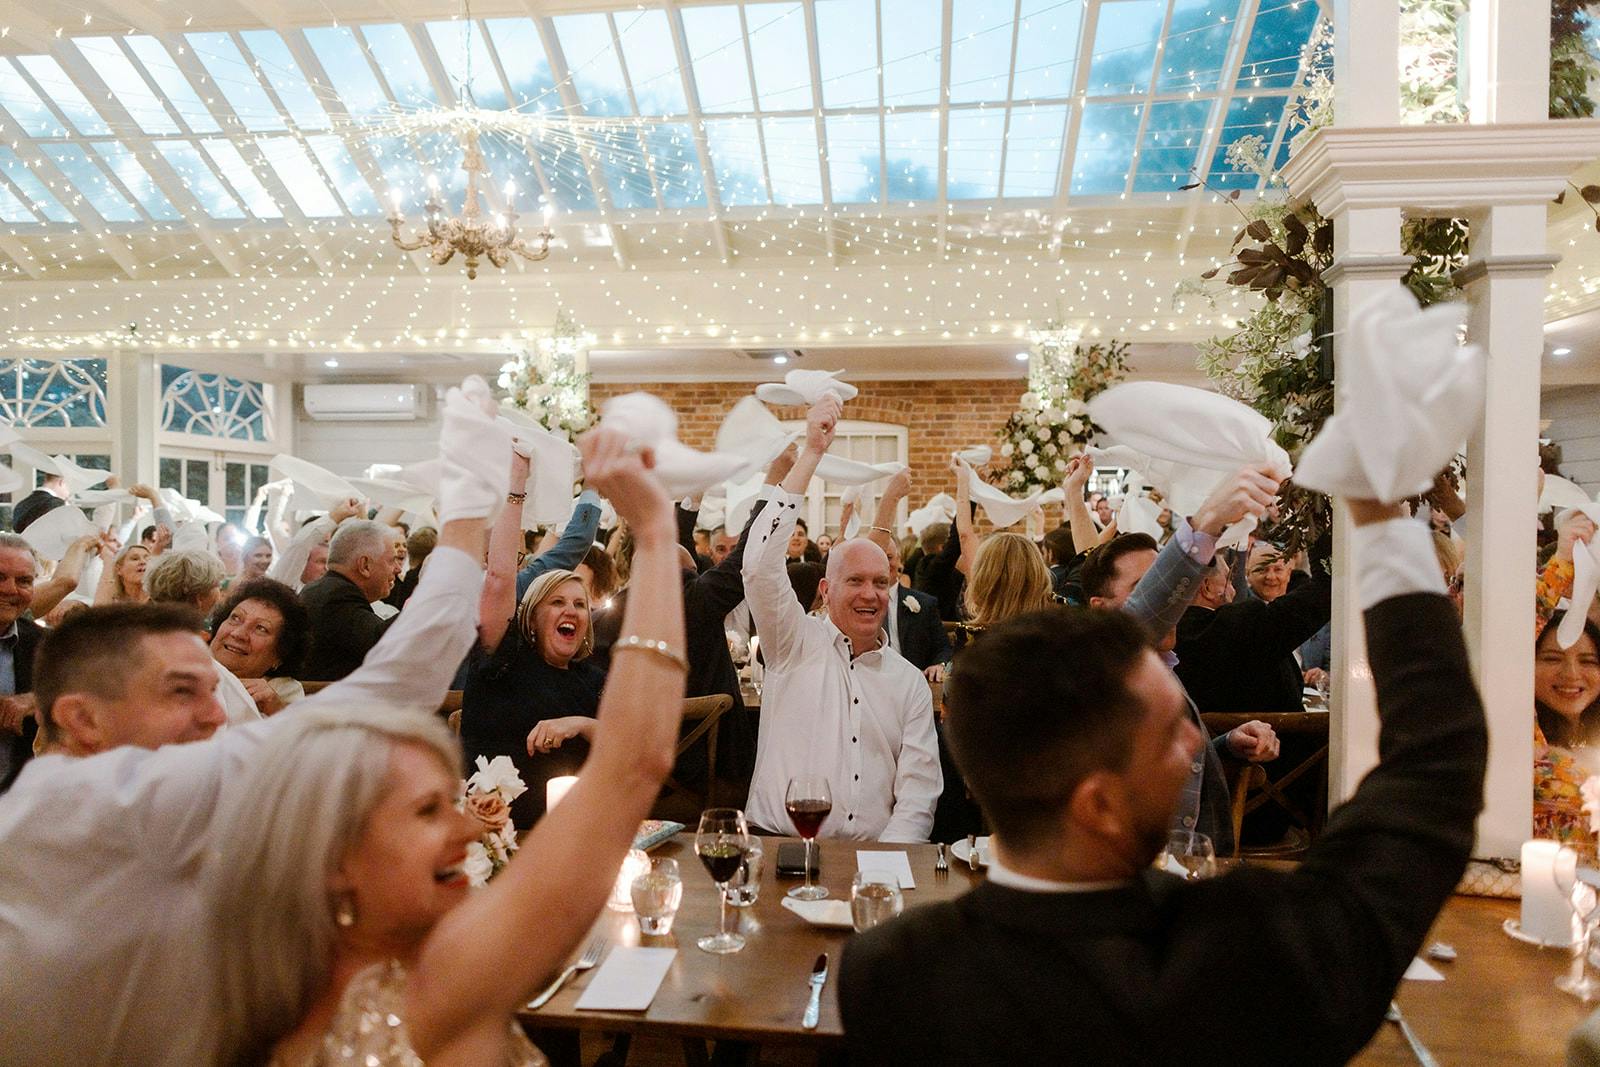 Guests waving napkins at wedding